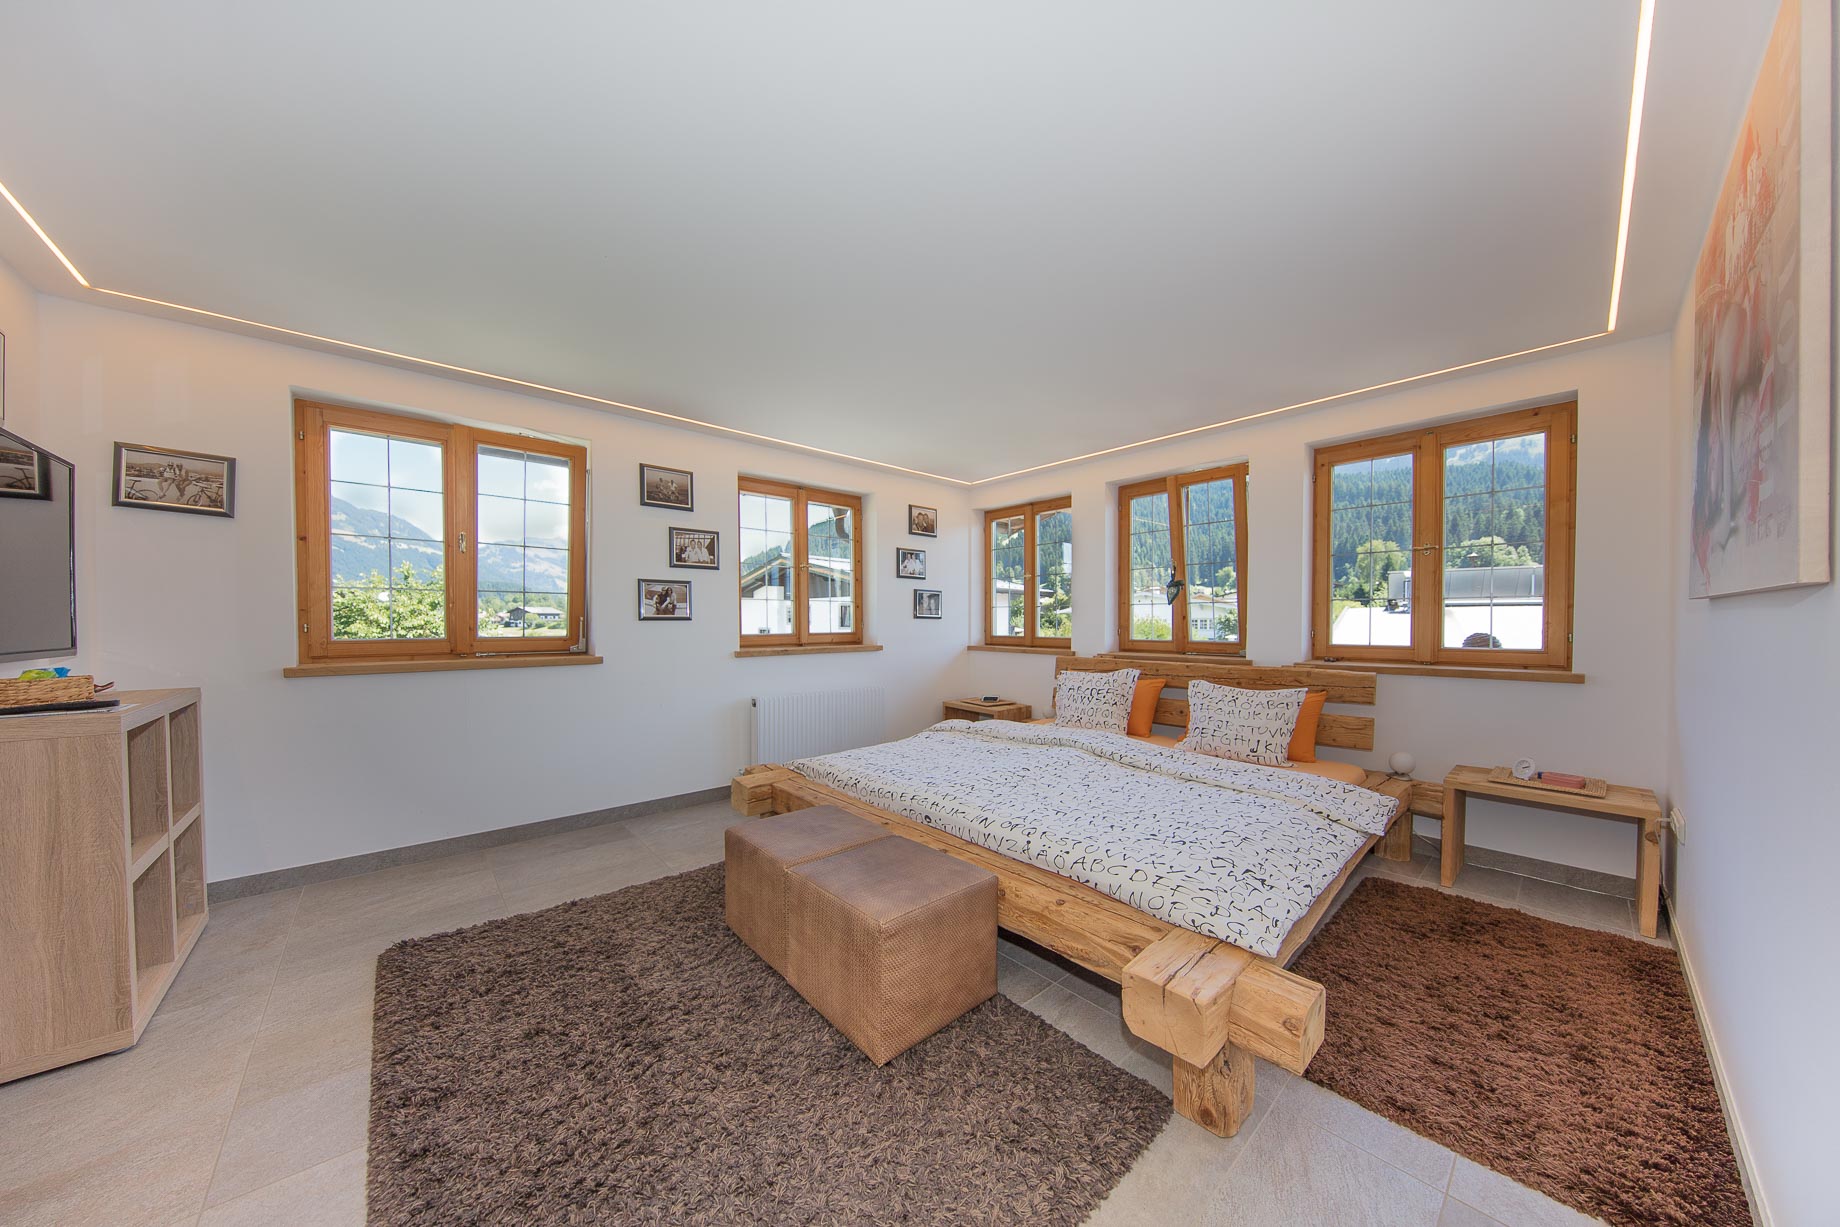 Schlafzimmer mit Doppelbett und Fernseher - Tirolerhaus